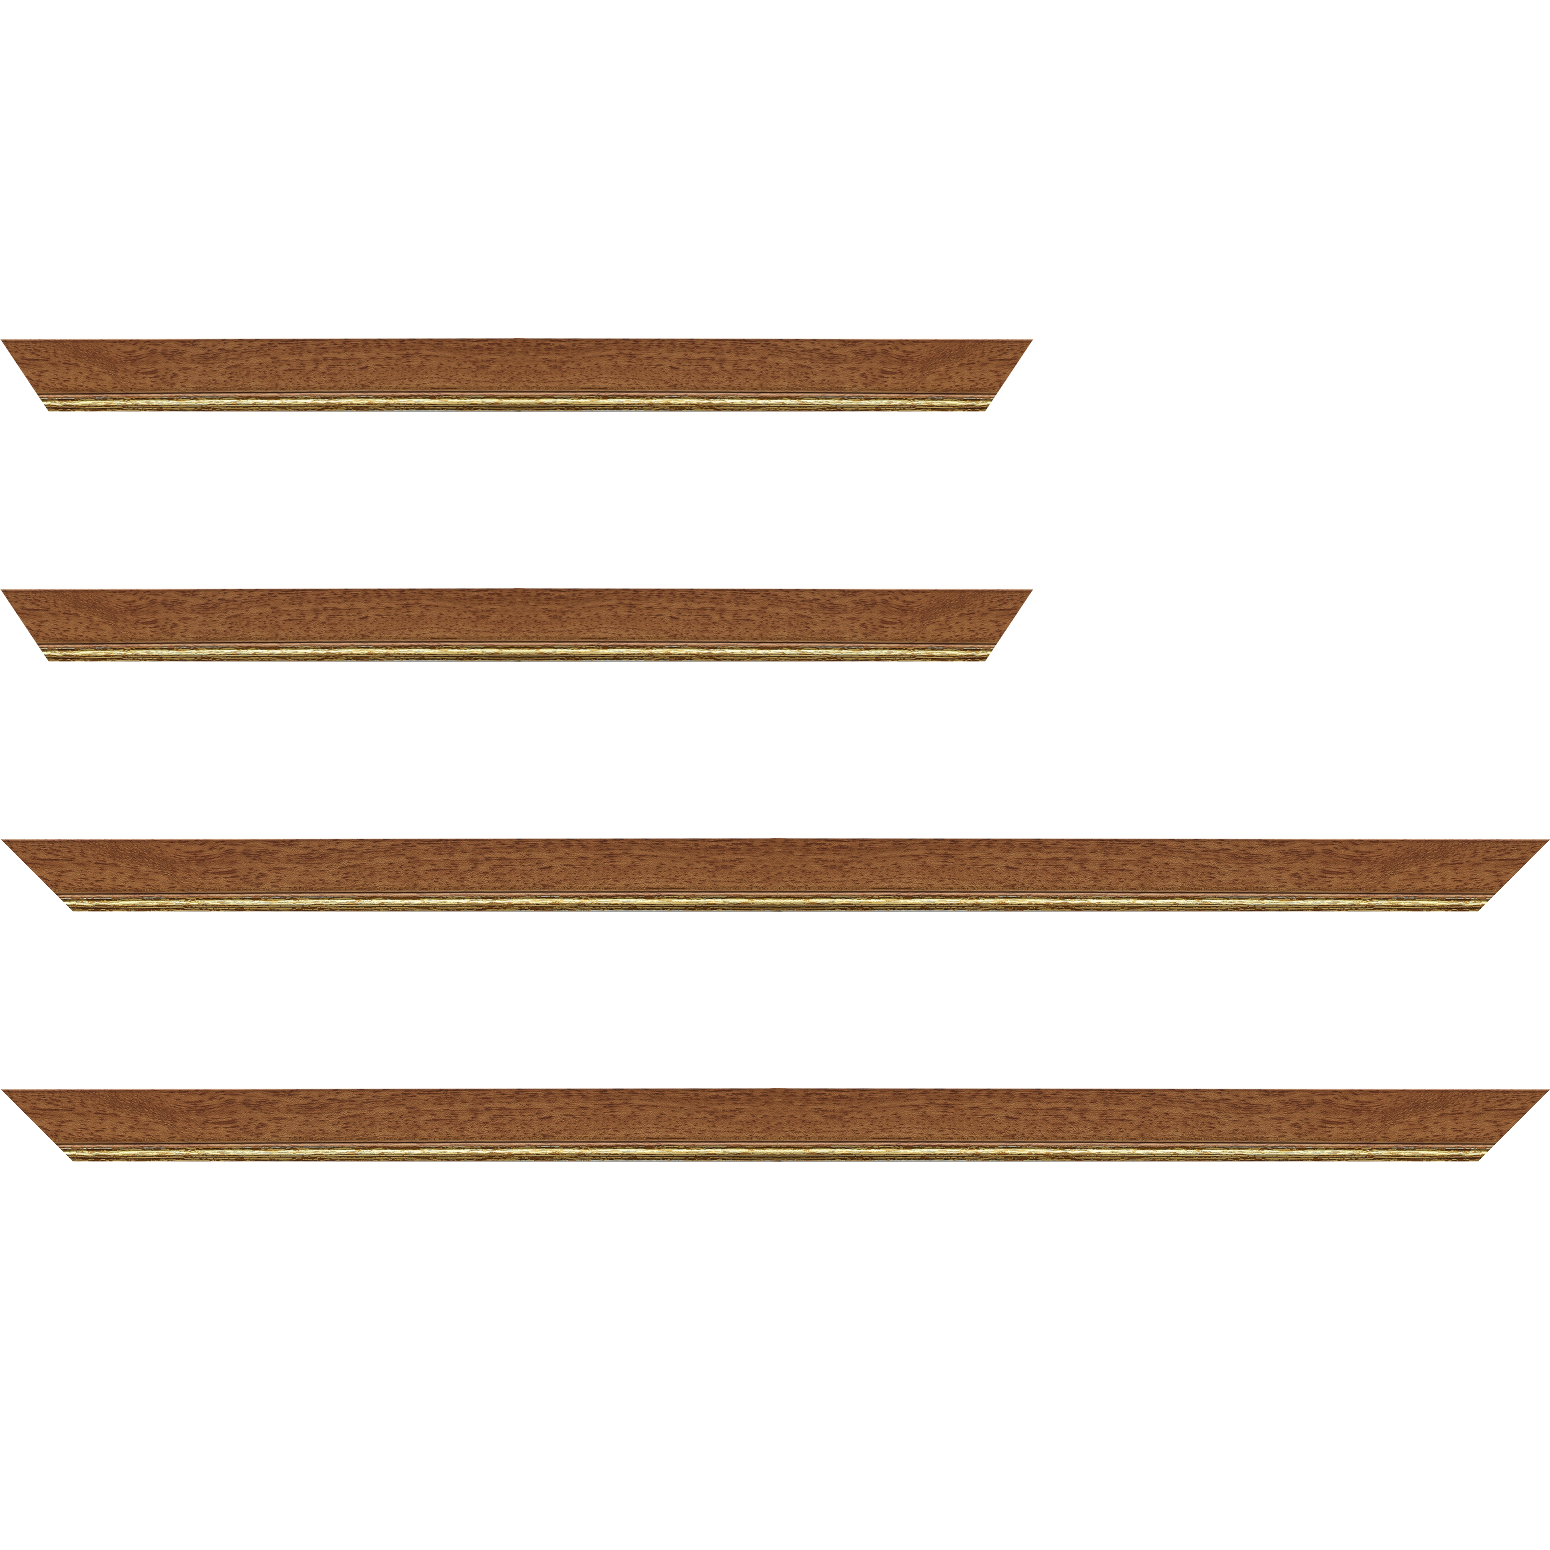 Baguette bois profil plat largeur 2.5cm couleur marron ton bois filet or